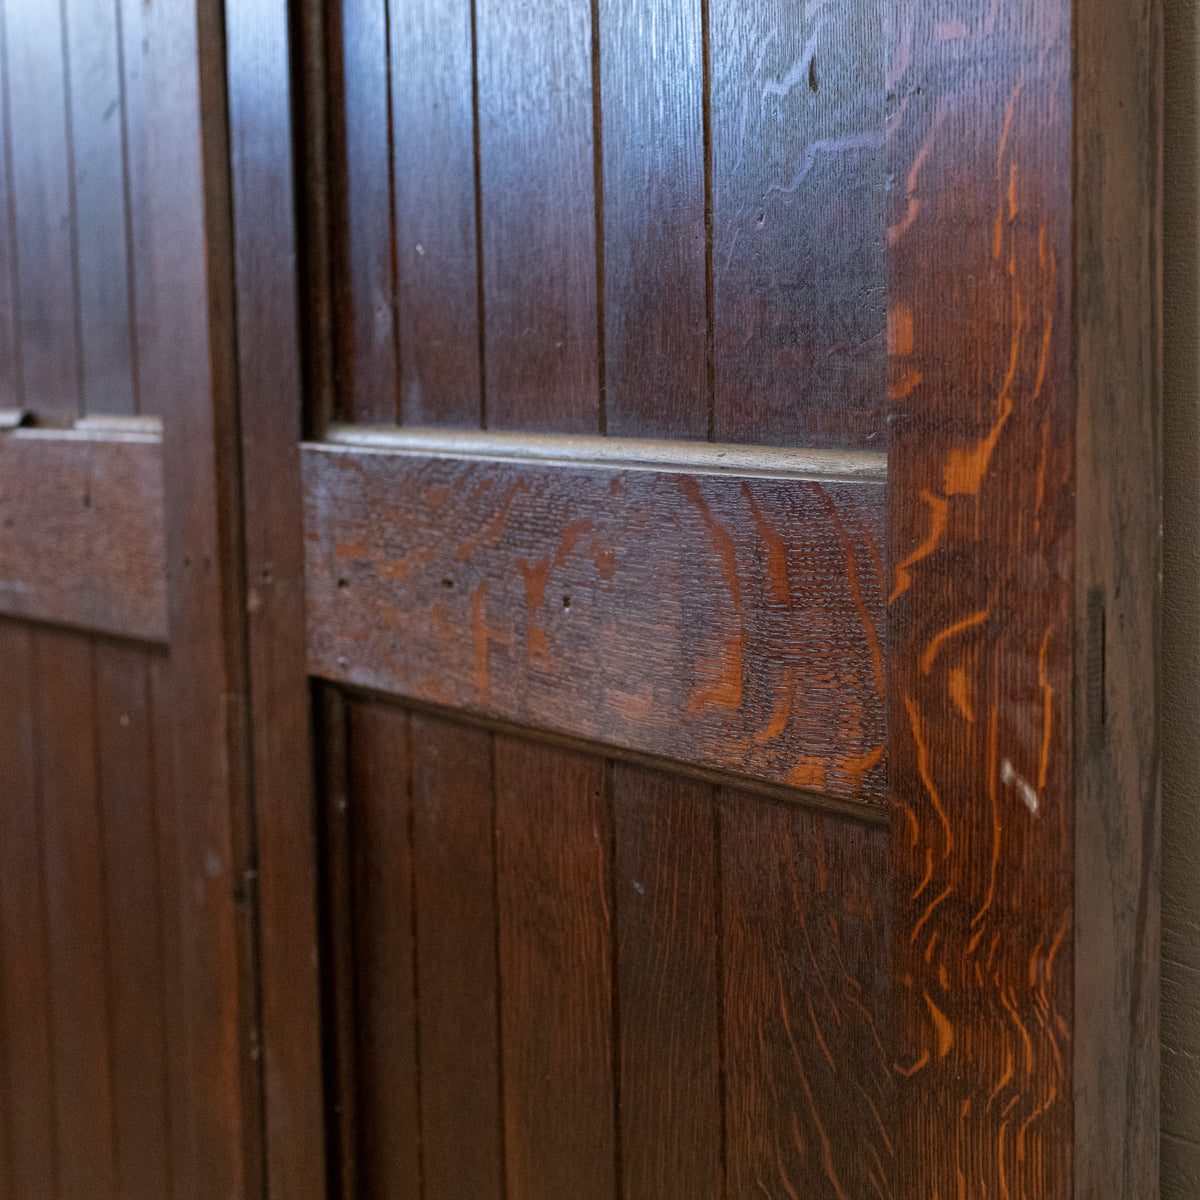 Reclaimed Antique Oak Double Doors 213.5cm x 147cm | The Architectural Forum